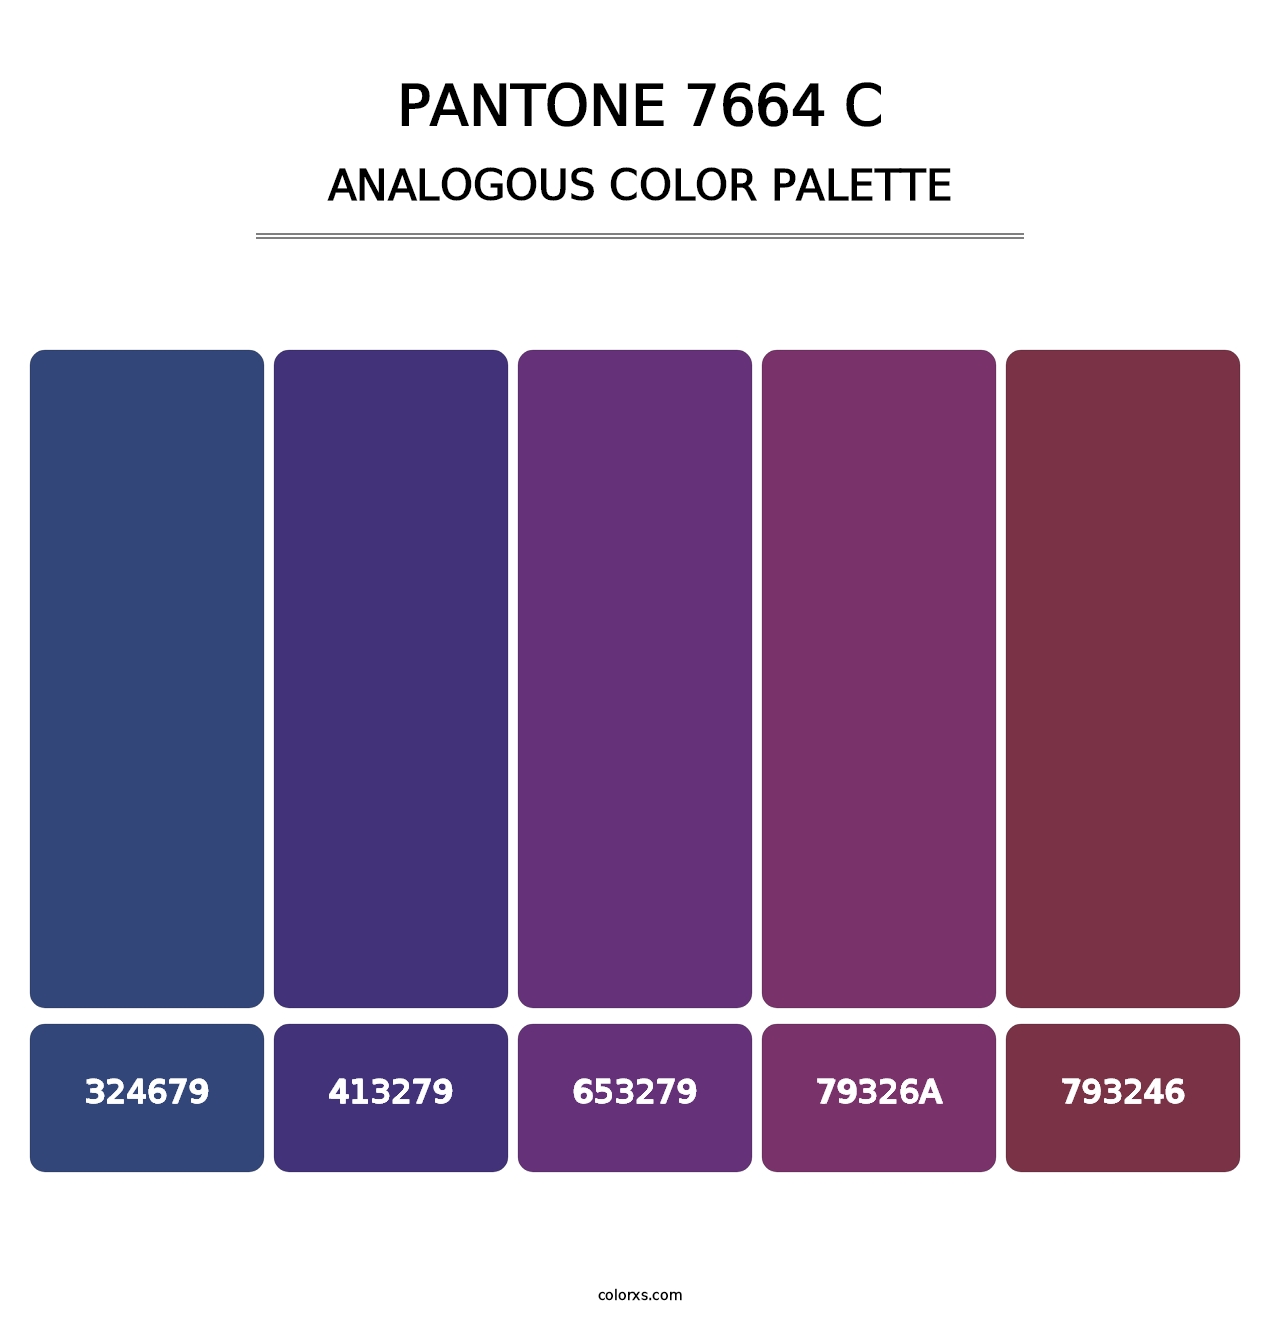 PANTONE 7664 C - Analogous Color Palette